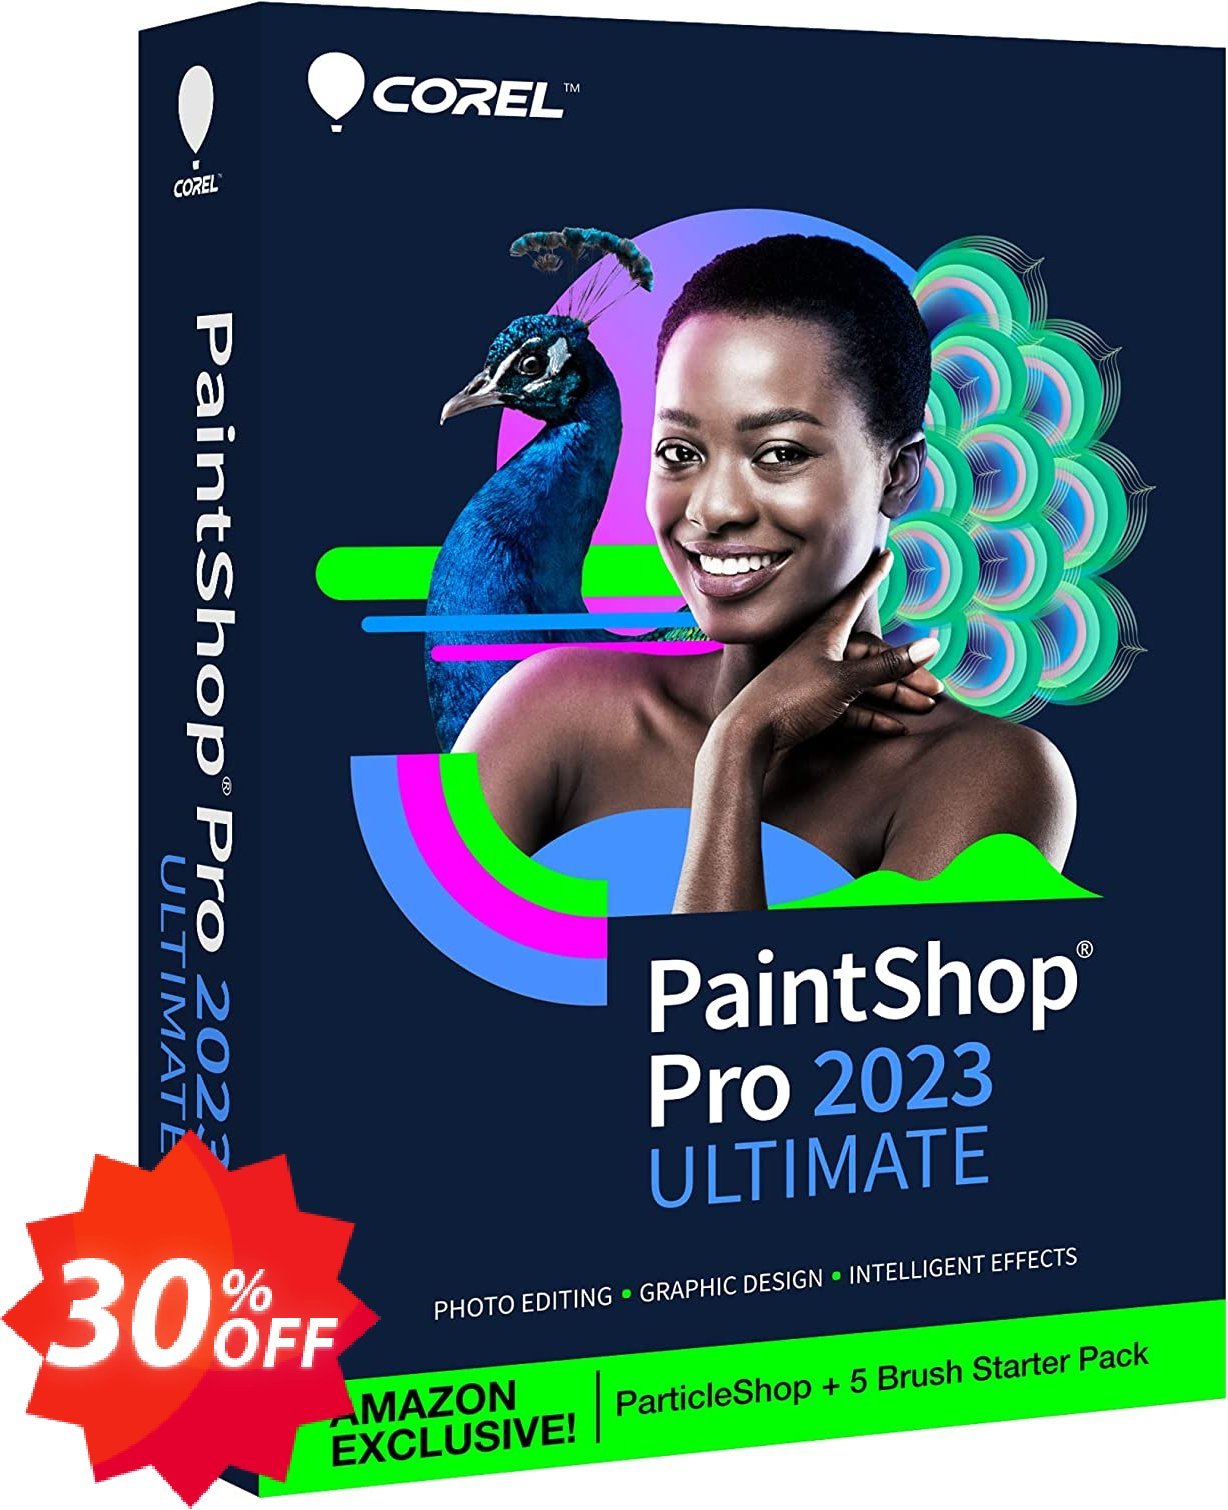 PaintShop Pro 2023 Ultimate Coupon code 30% discount 